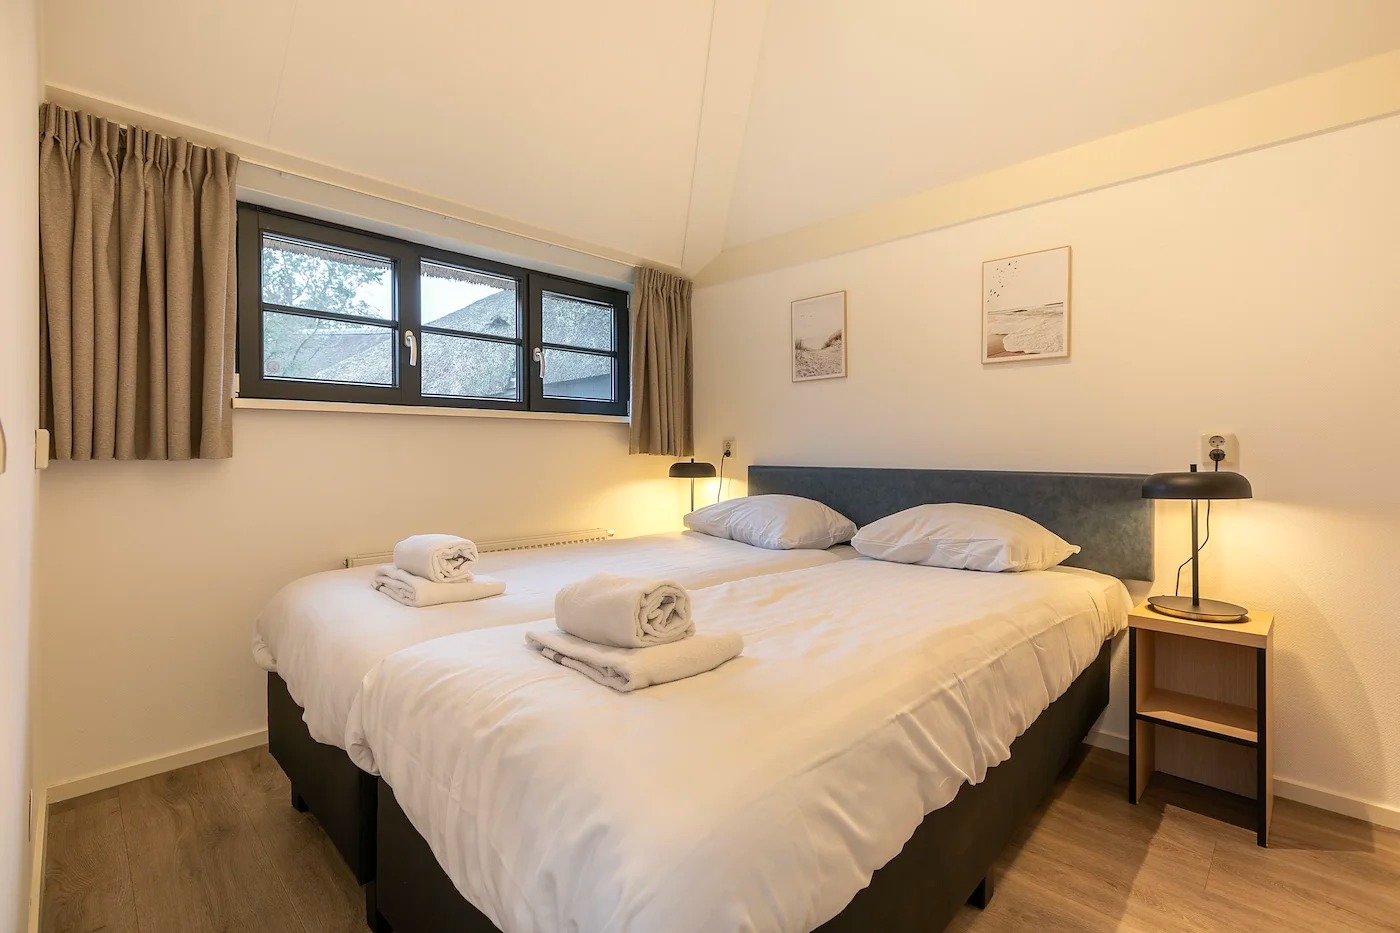 Villapparte-Dormio Resorts-Buitenhuis 4-Knus vakantiehuis voor 4 personen-Park Scorleduyn-Schoorl-Noord-Holland-sfeervolle slaapkamer